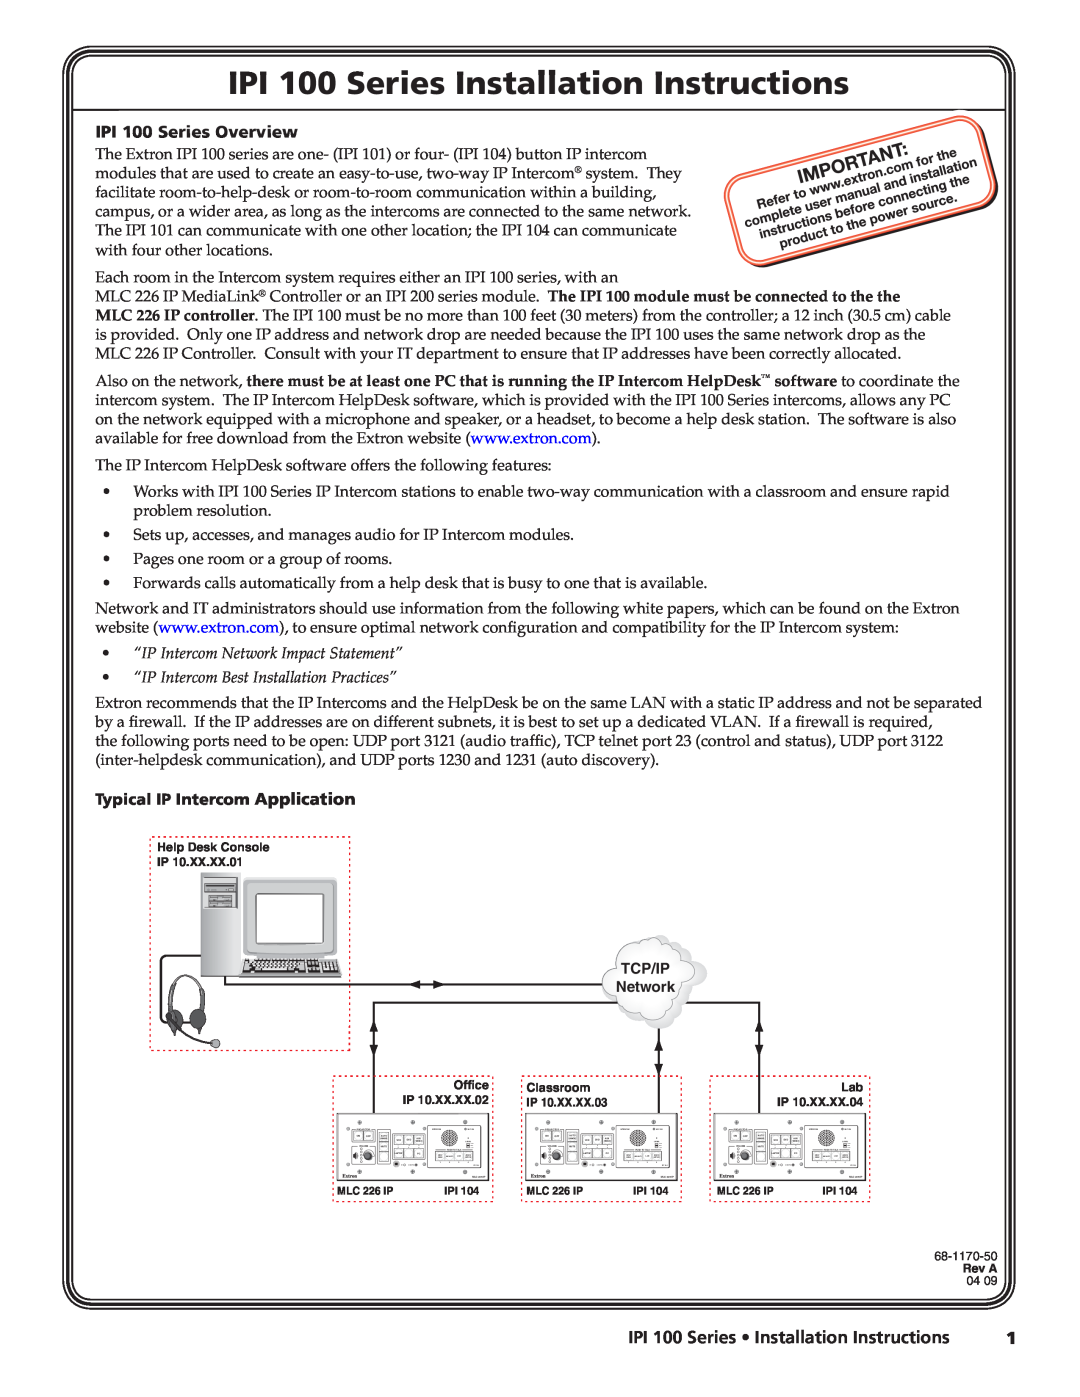 Extron electronic IPI 104 installation instructions IPI 100 Series Overview, IPI 100 Series Installation Instructions 